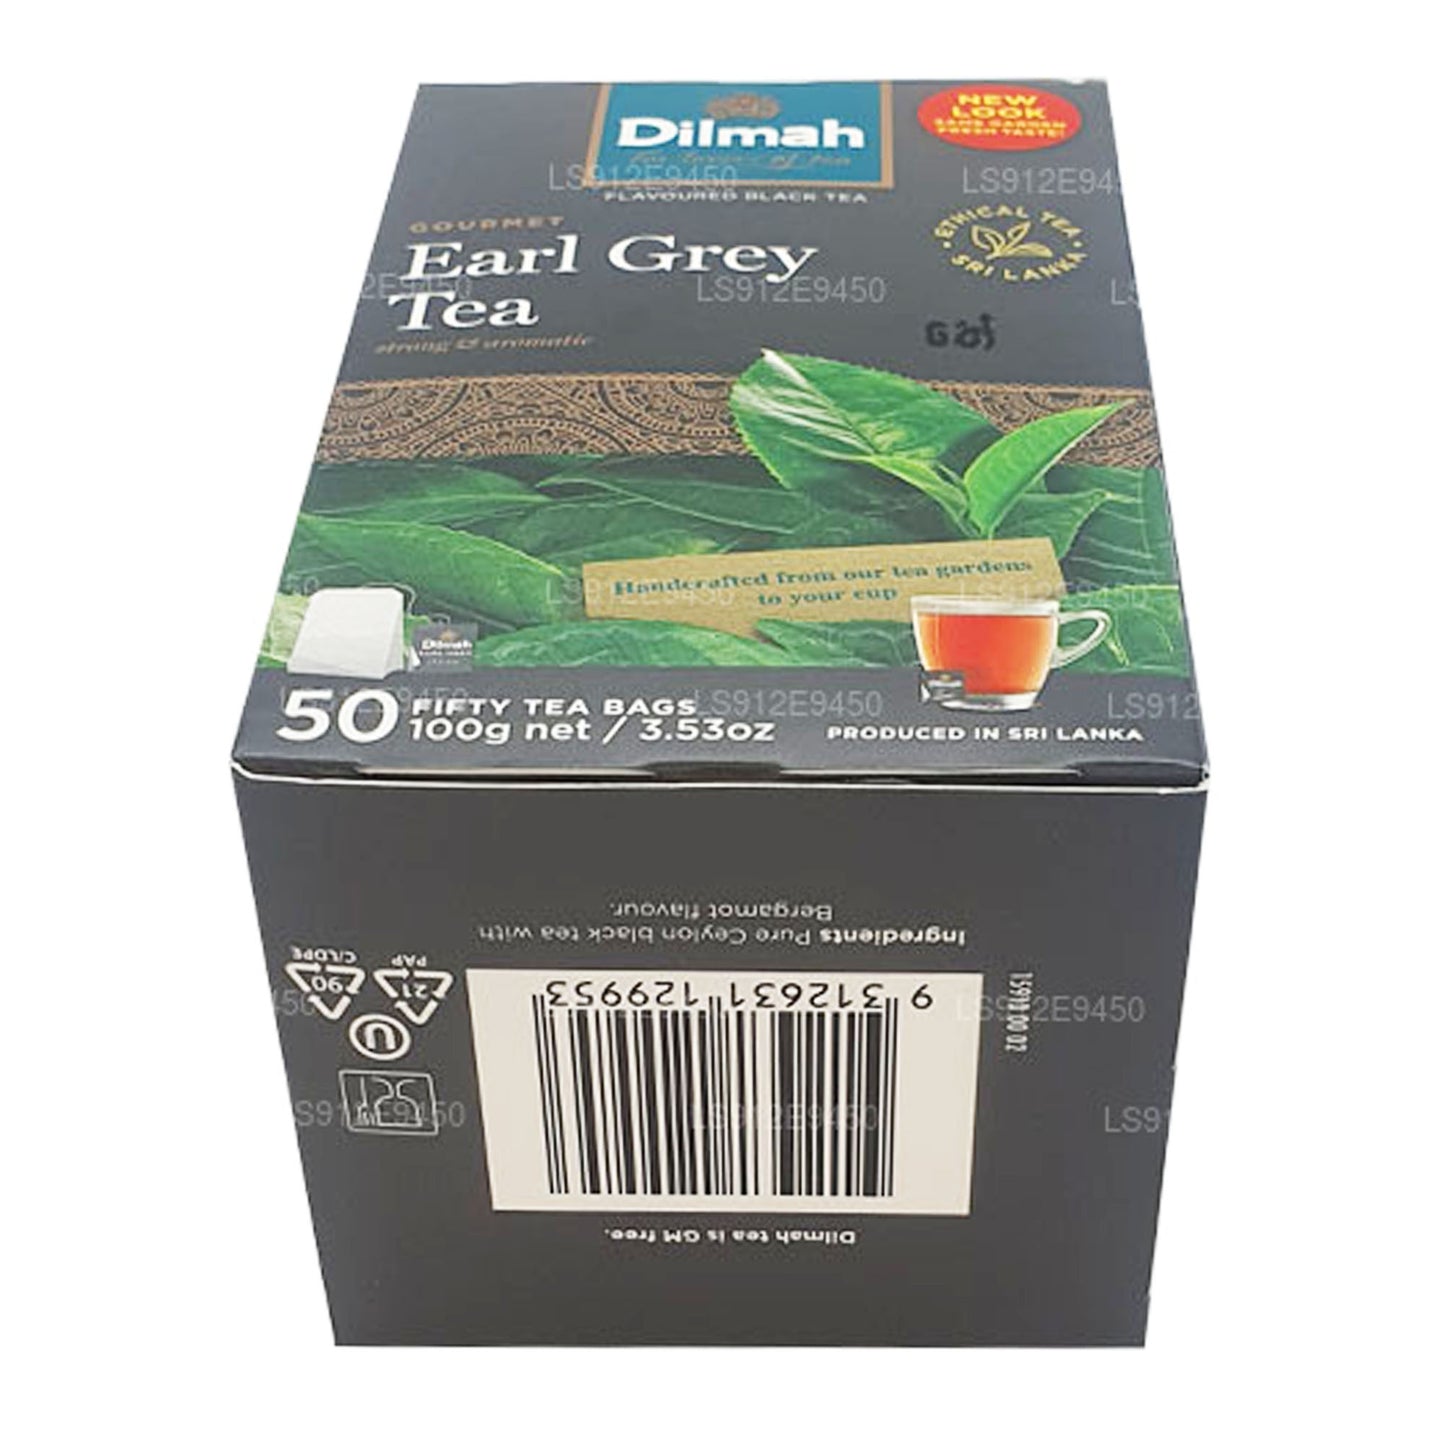 Dilmah Earl Grey 50 torebek herbaty (100g)